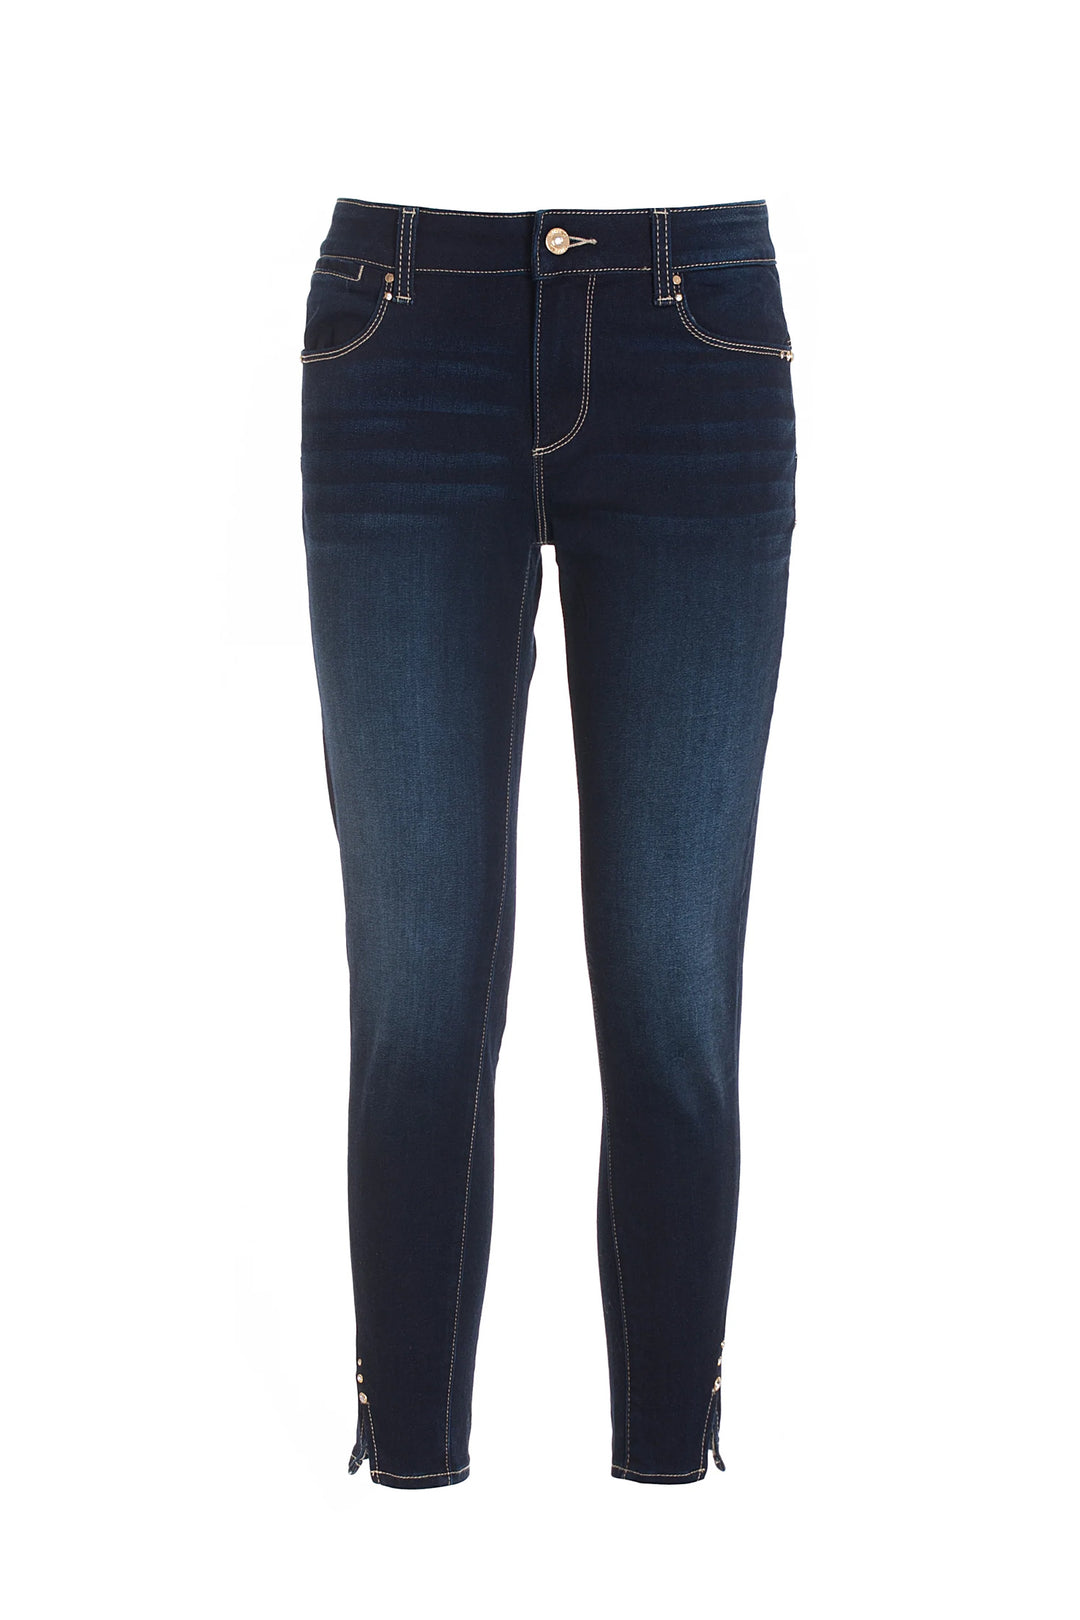 FRACOMINA Jeans skinny cropped in denim con lavaggio scuro - Mancinelli 1954